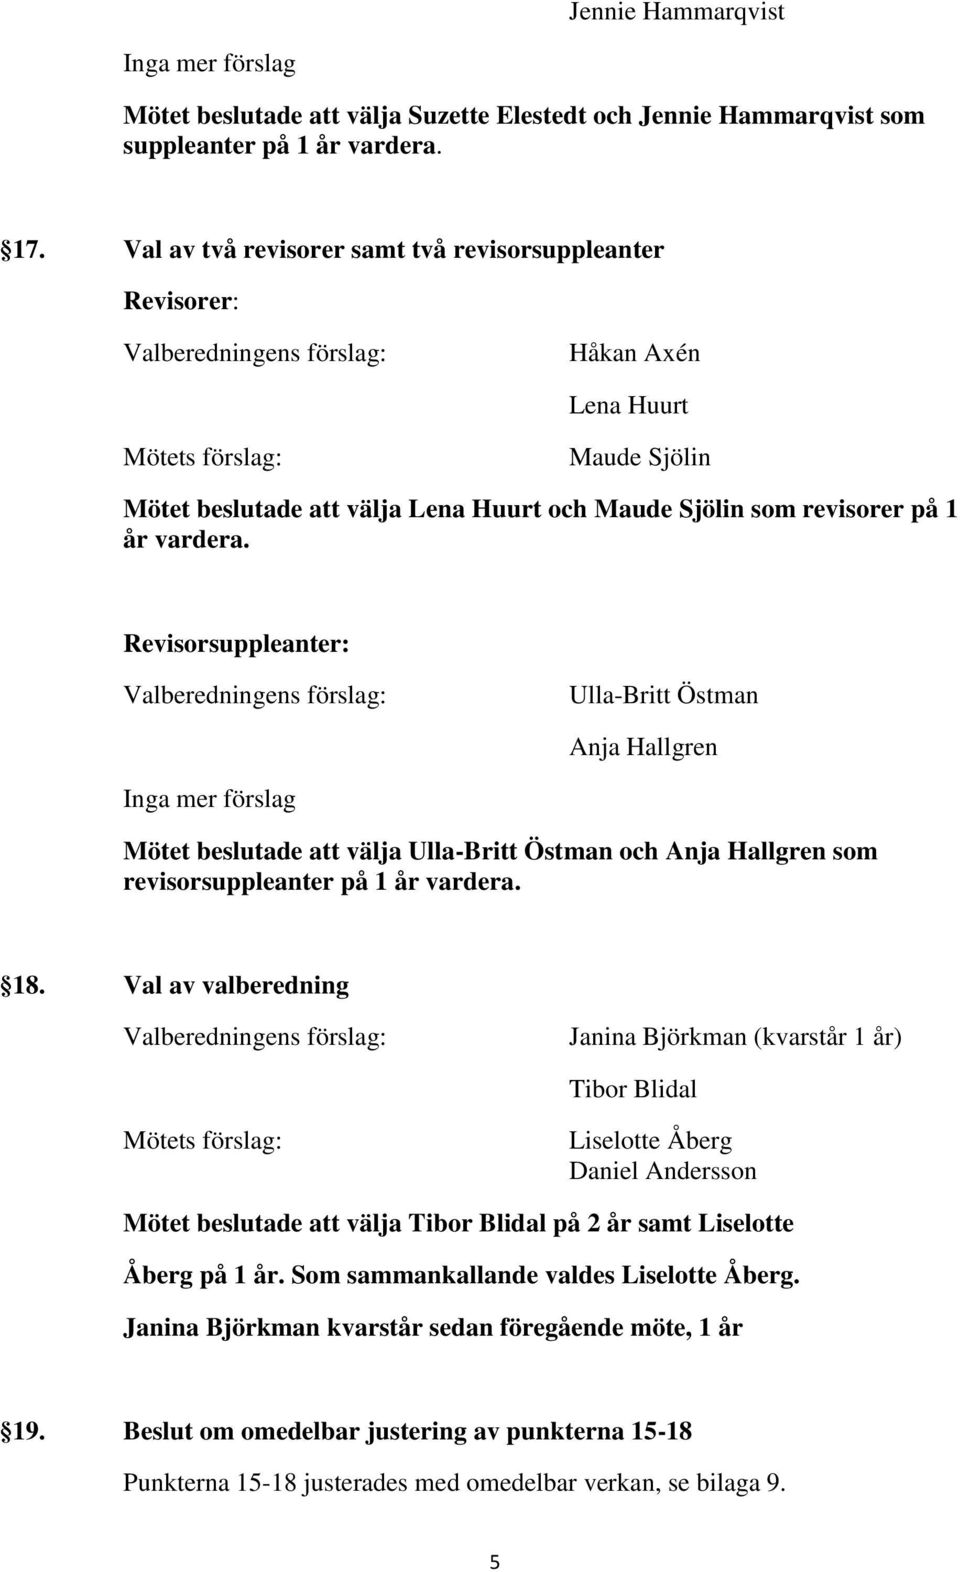 Revisorsuppleanter: Ulla-Britt Östman Anja Hallgren Inga mer förslag Mötet beslutade att välja Ulla-Britt Östman och Anja Hallgren som revisorsuppleanter på 1 år vardera. 18.